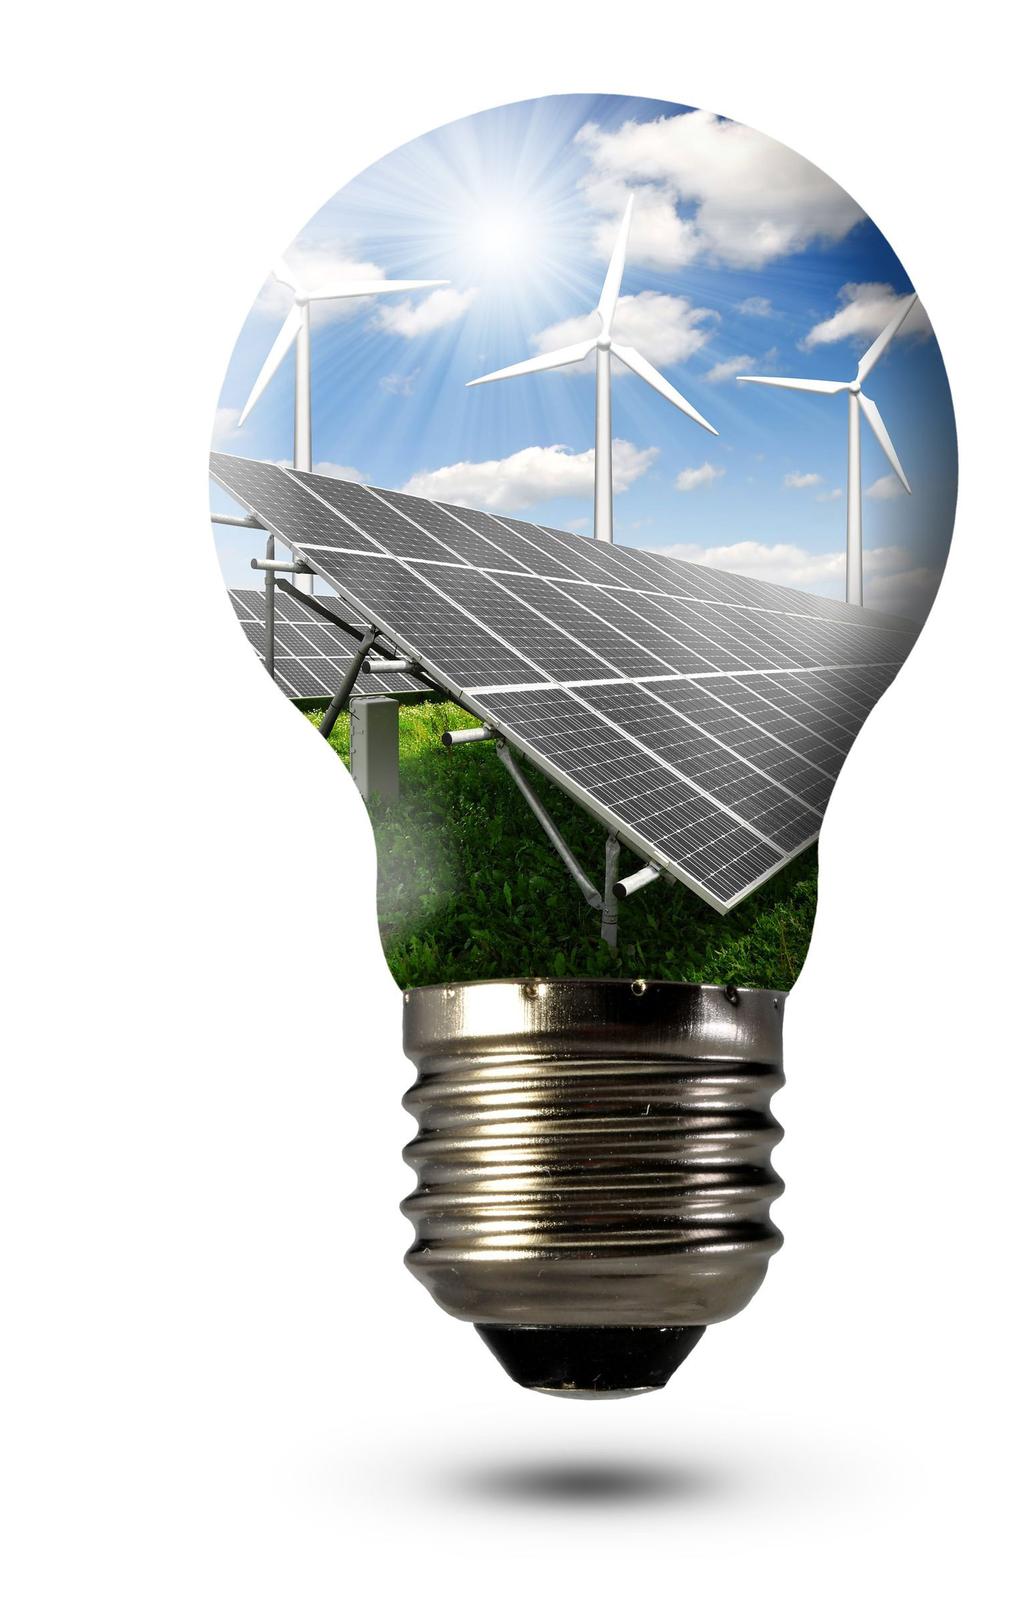 A hazai megújuló energiák jövője Fókuszban a hő- és napenergia IIR A rendezvény szakmai együttműködő partnere: Megújuló Energia Szervezetek Szövetsége A szakfórum fókuszában: Az új Nemzeti Energia és